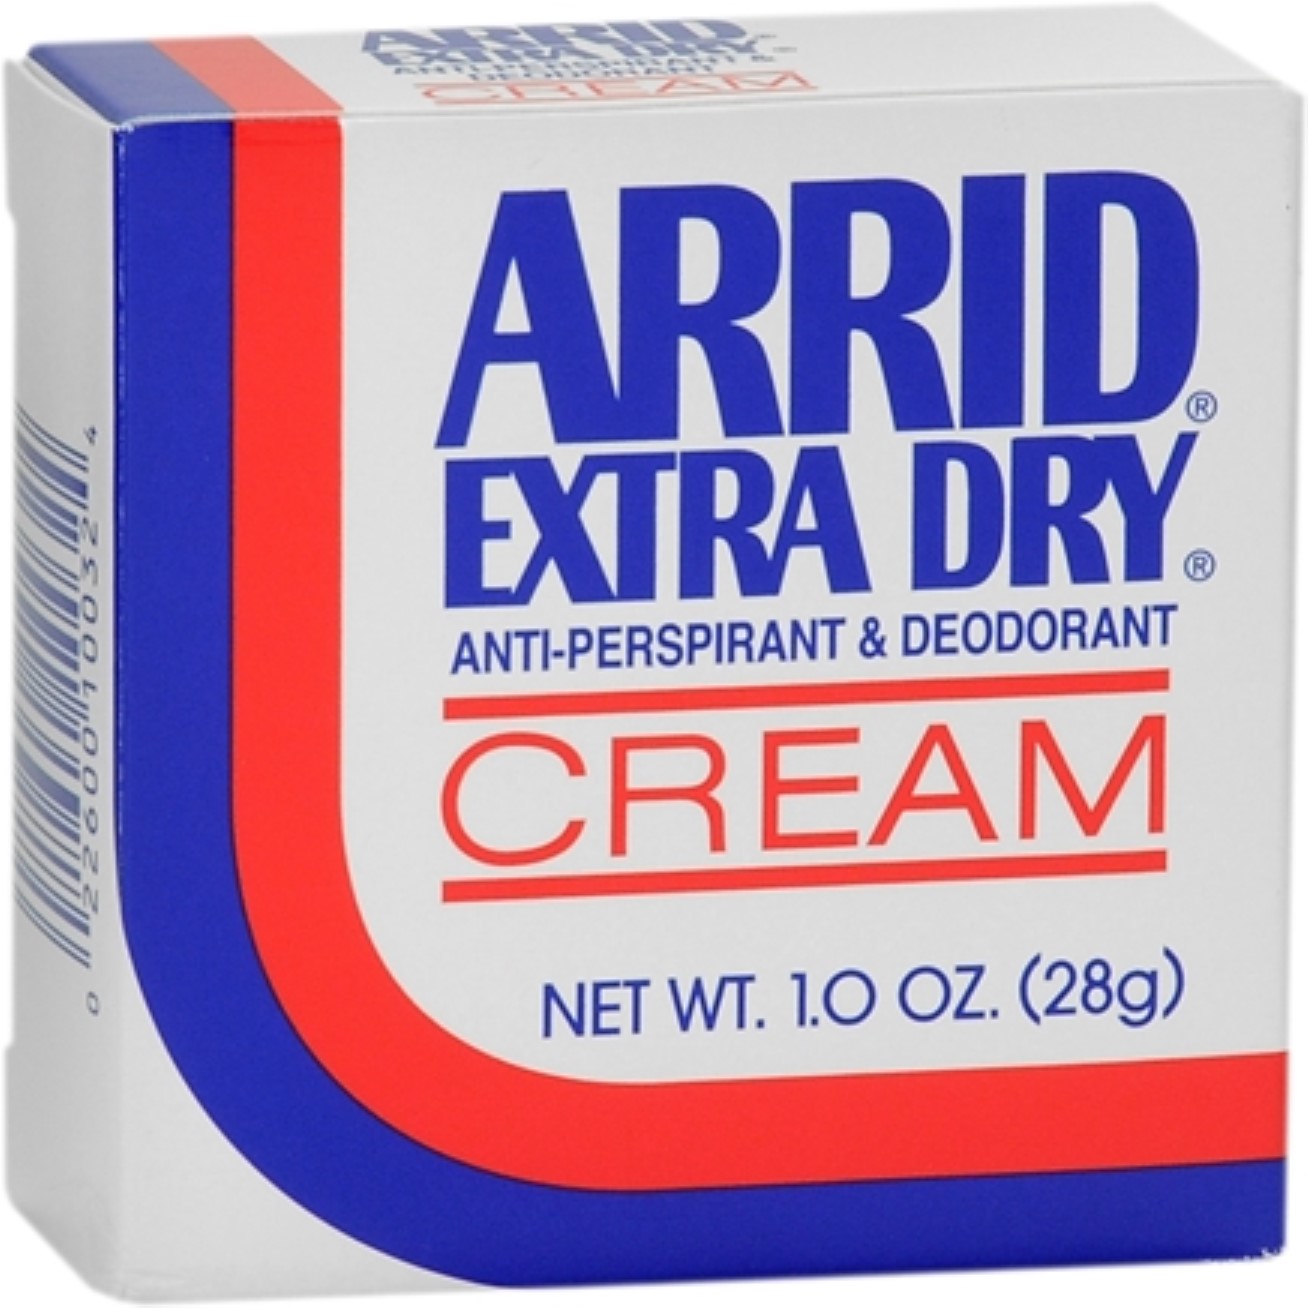 Arrid Extra Dry Anti-Perspirant/Deodorant Cream, 1.0 oz. - image 1 of 5